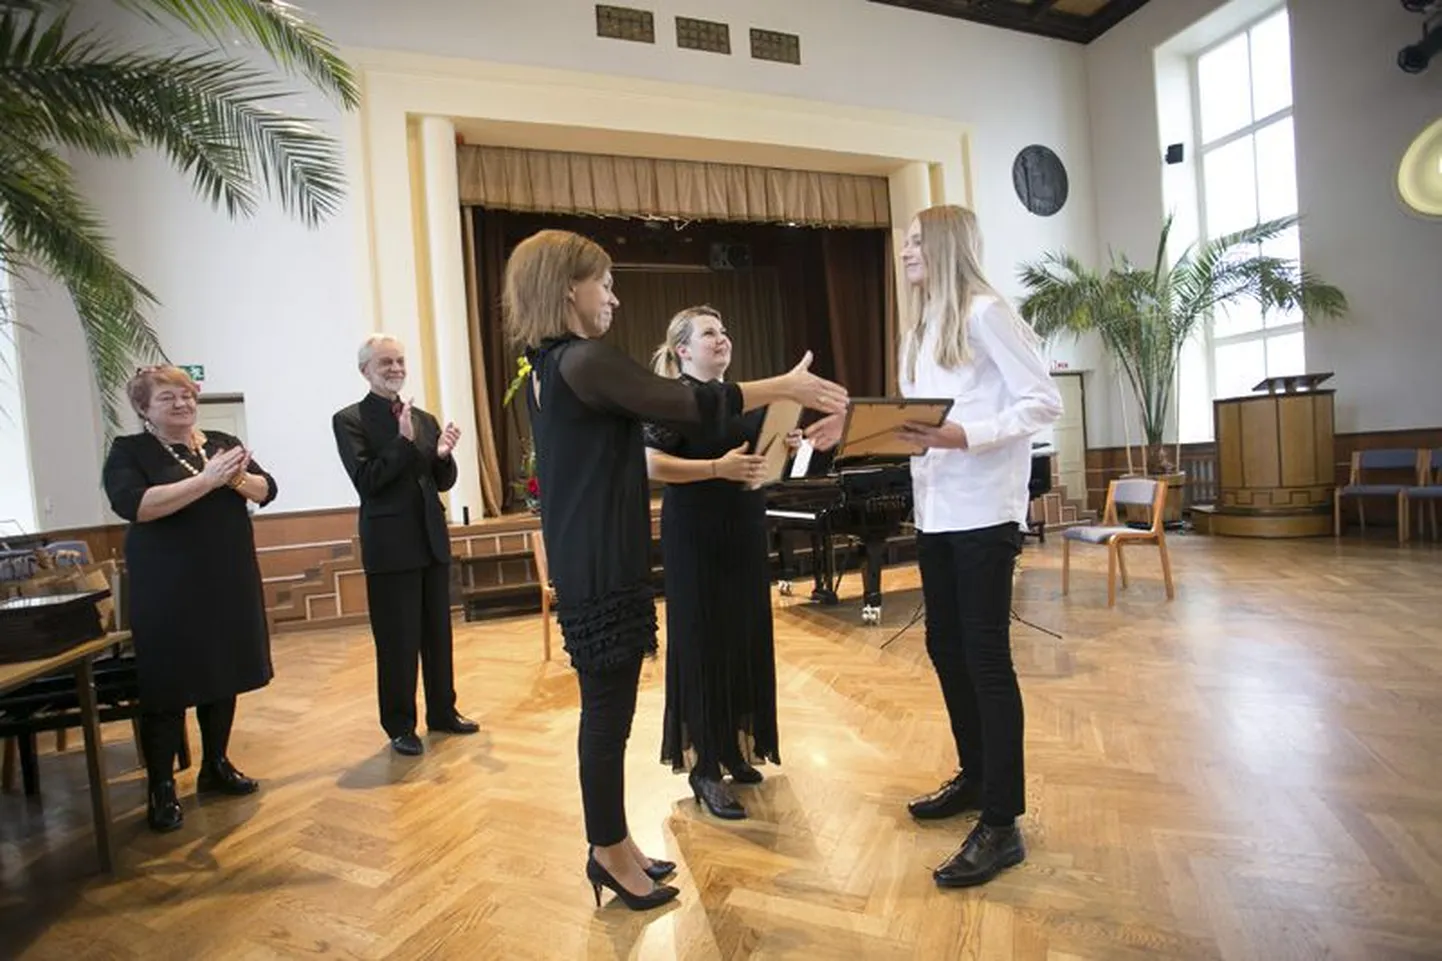 Karl-Markus Gauk Põlva muusikakoolist sai žürii eripreemia kui parim tšellist.